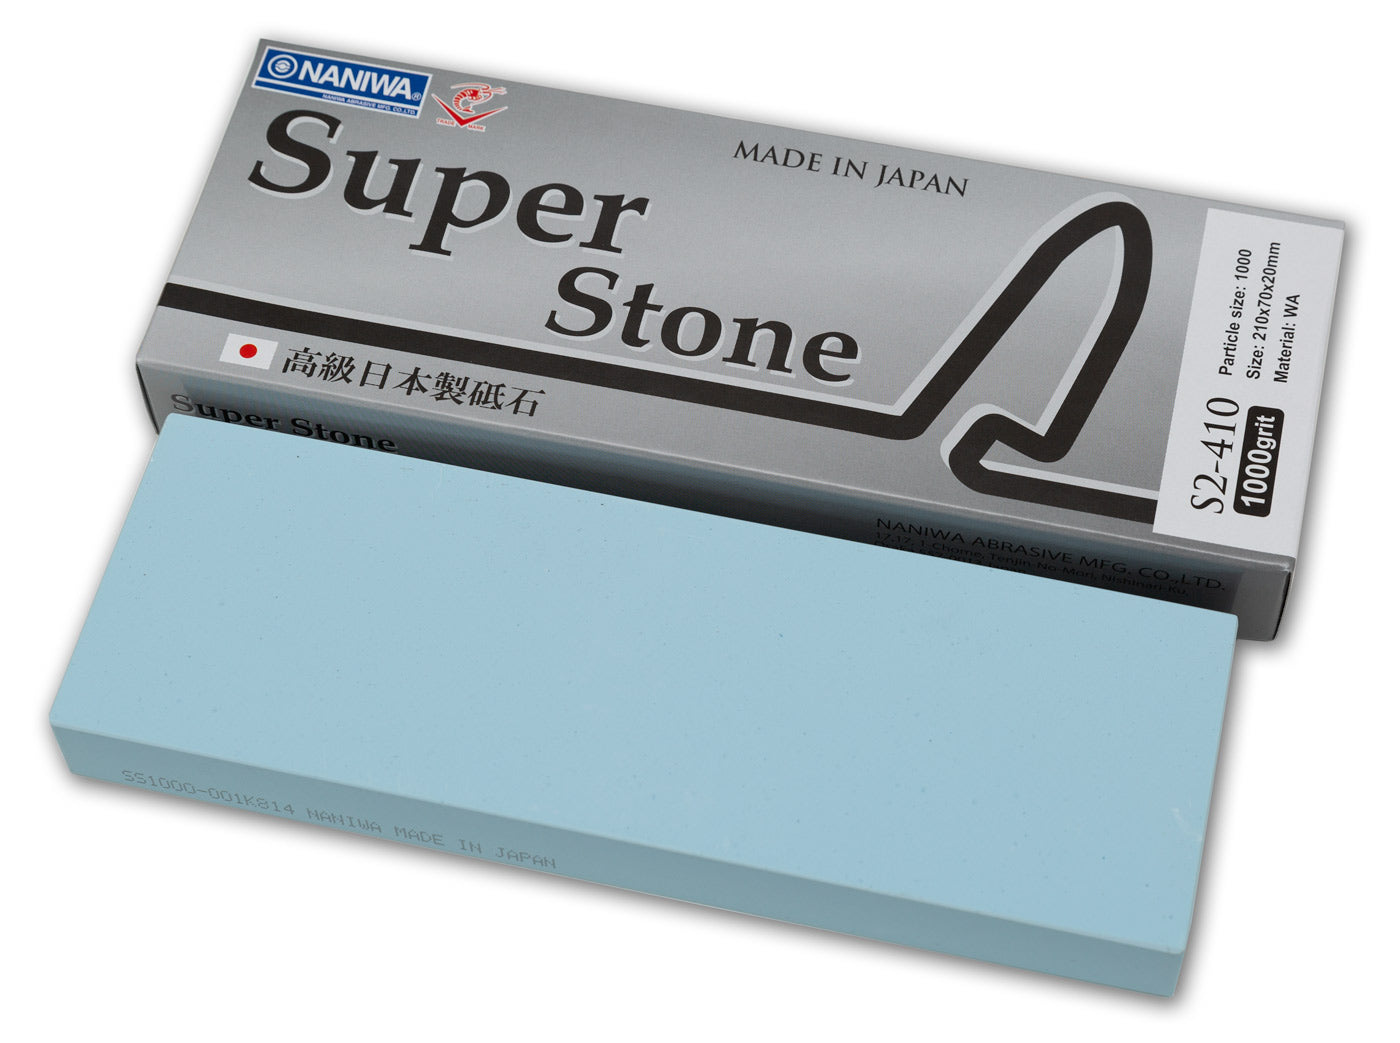 Naniwa Super-Stone Japanese Whetstone Sharpening Stone, 1000 grit